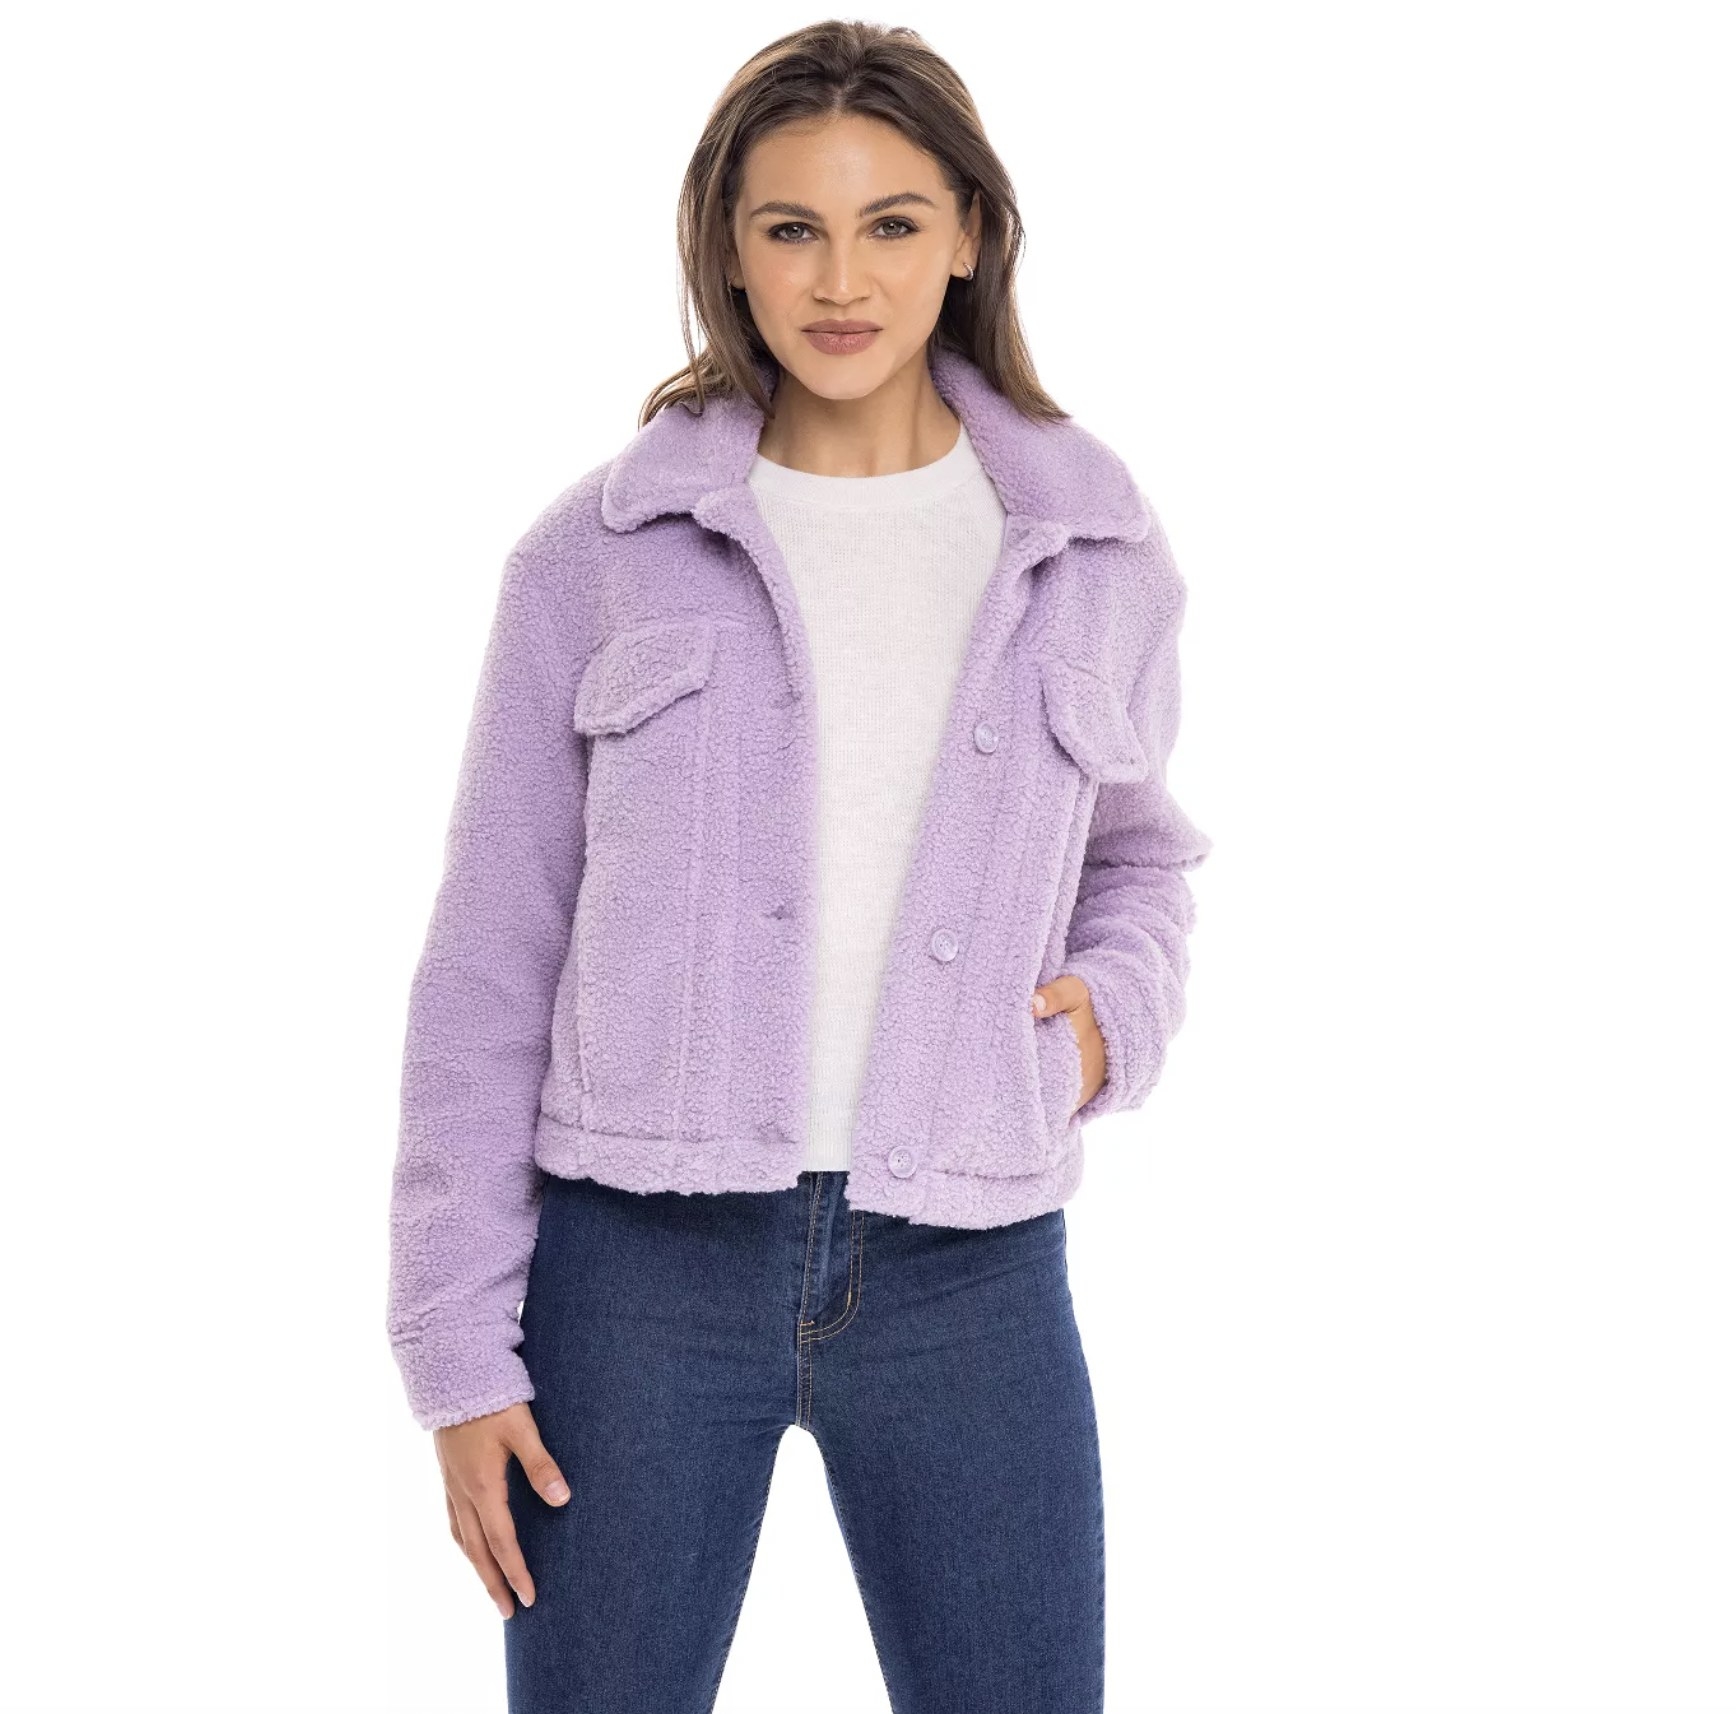 model wearing the jacket in purple